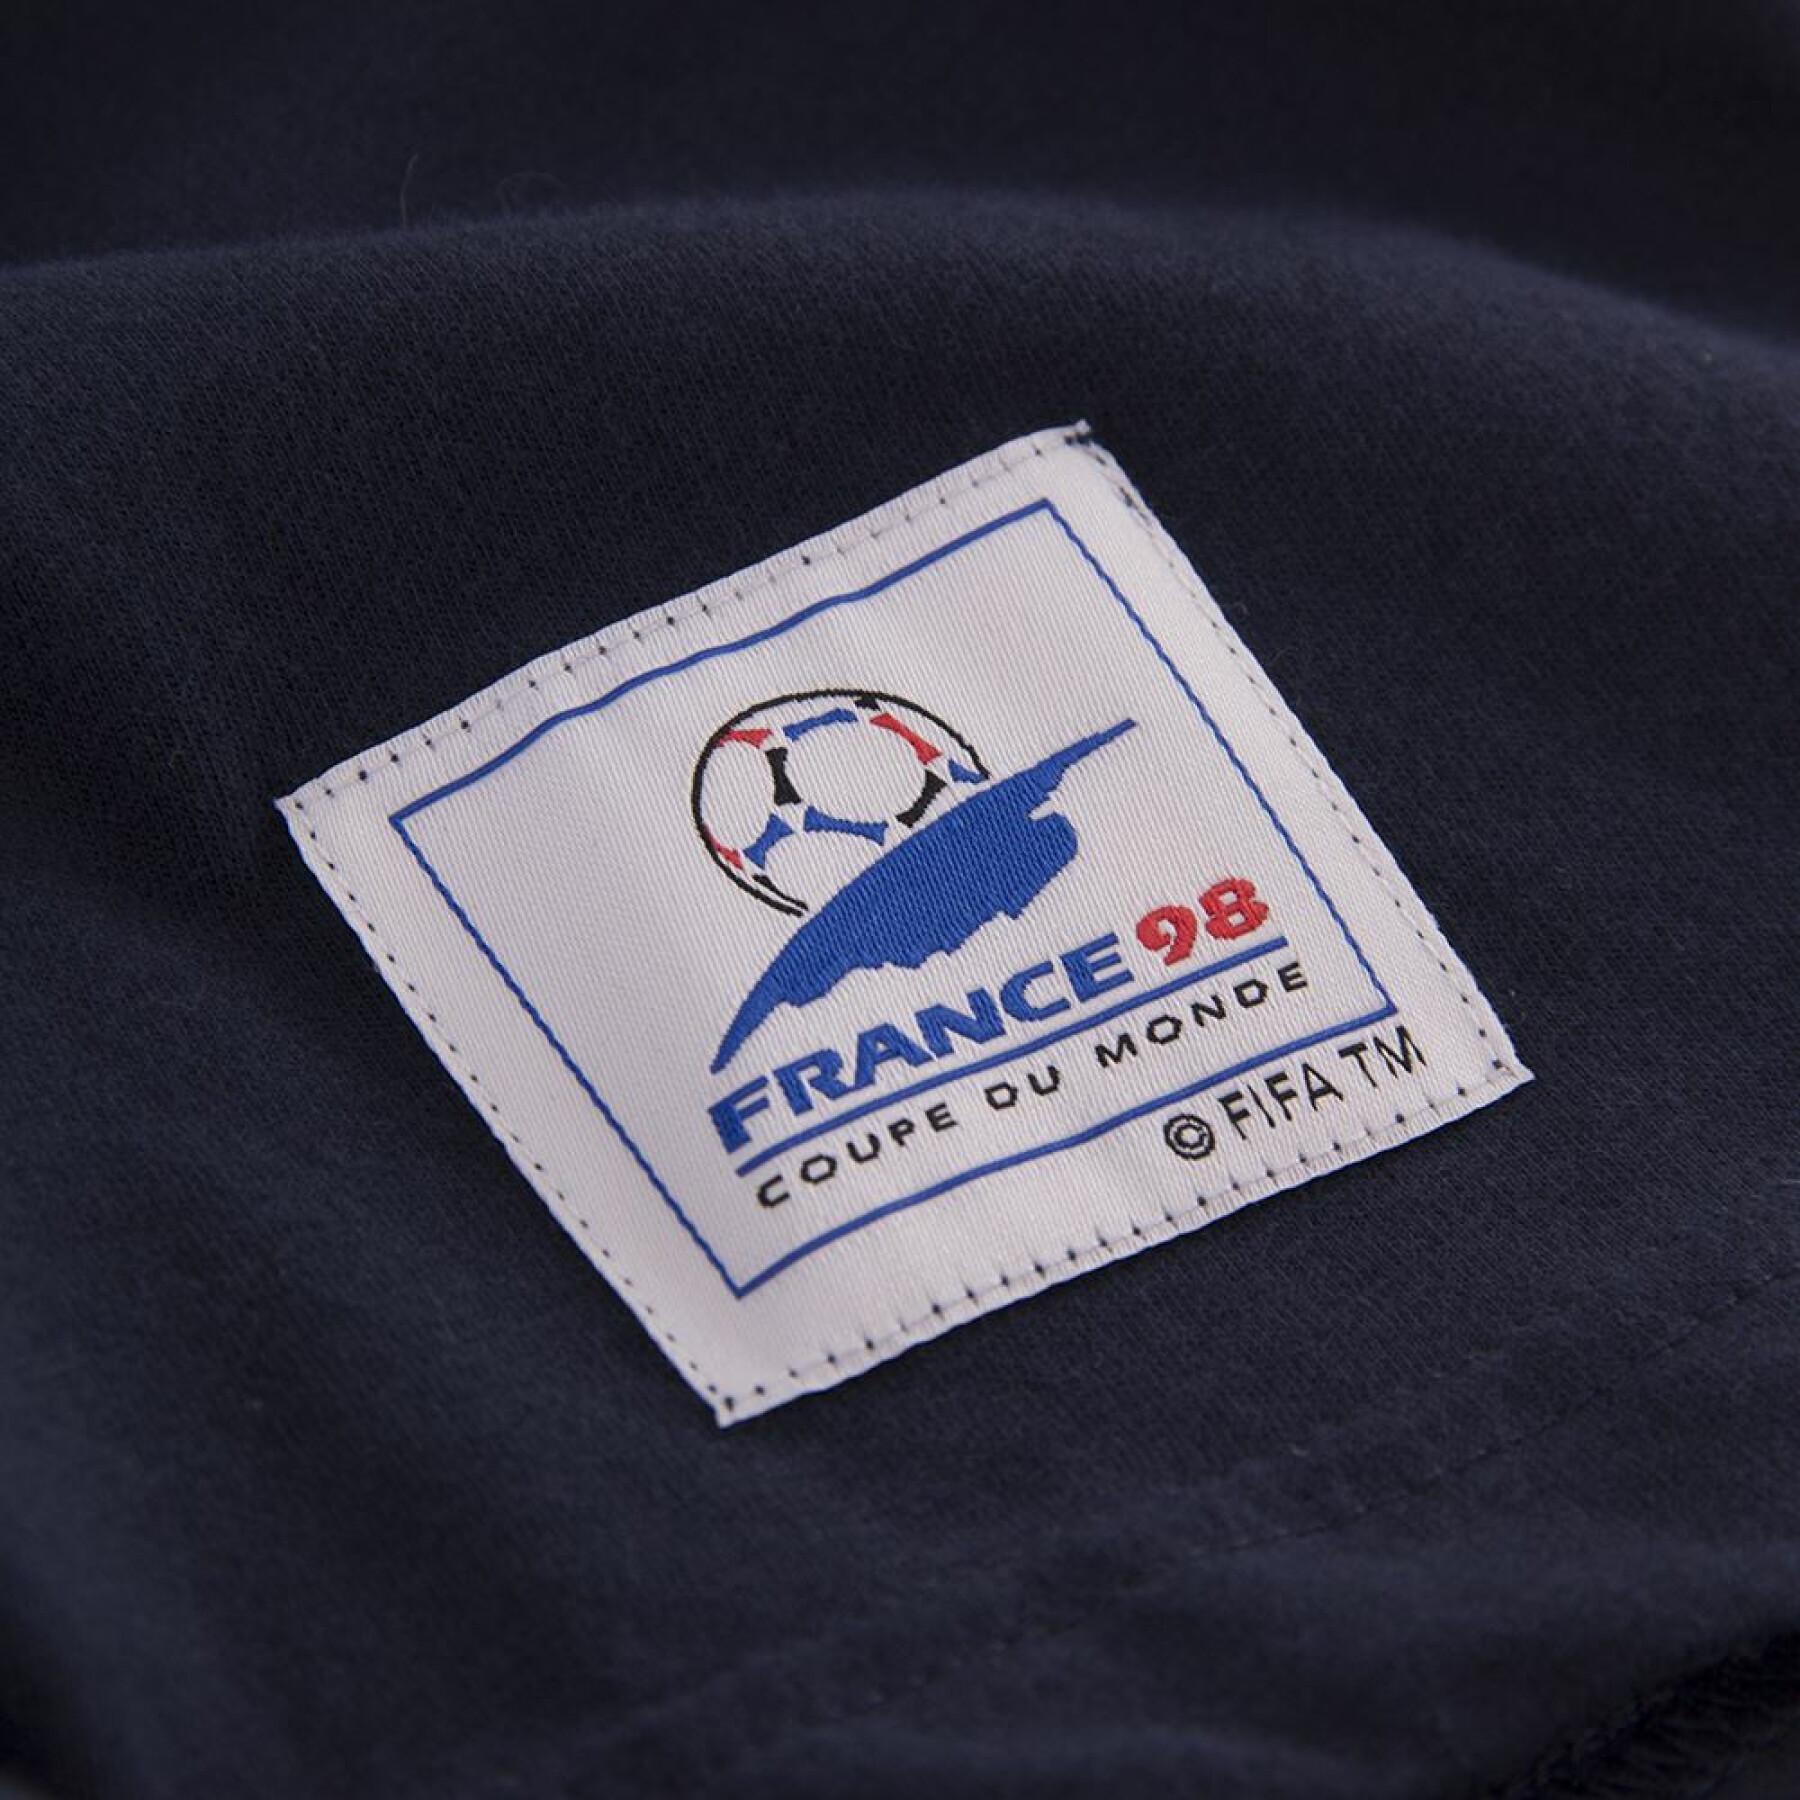 Koszulka Copa Football France Mascot Coupe du monde 1998